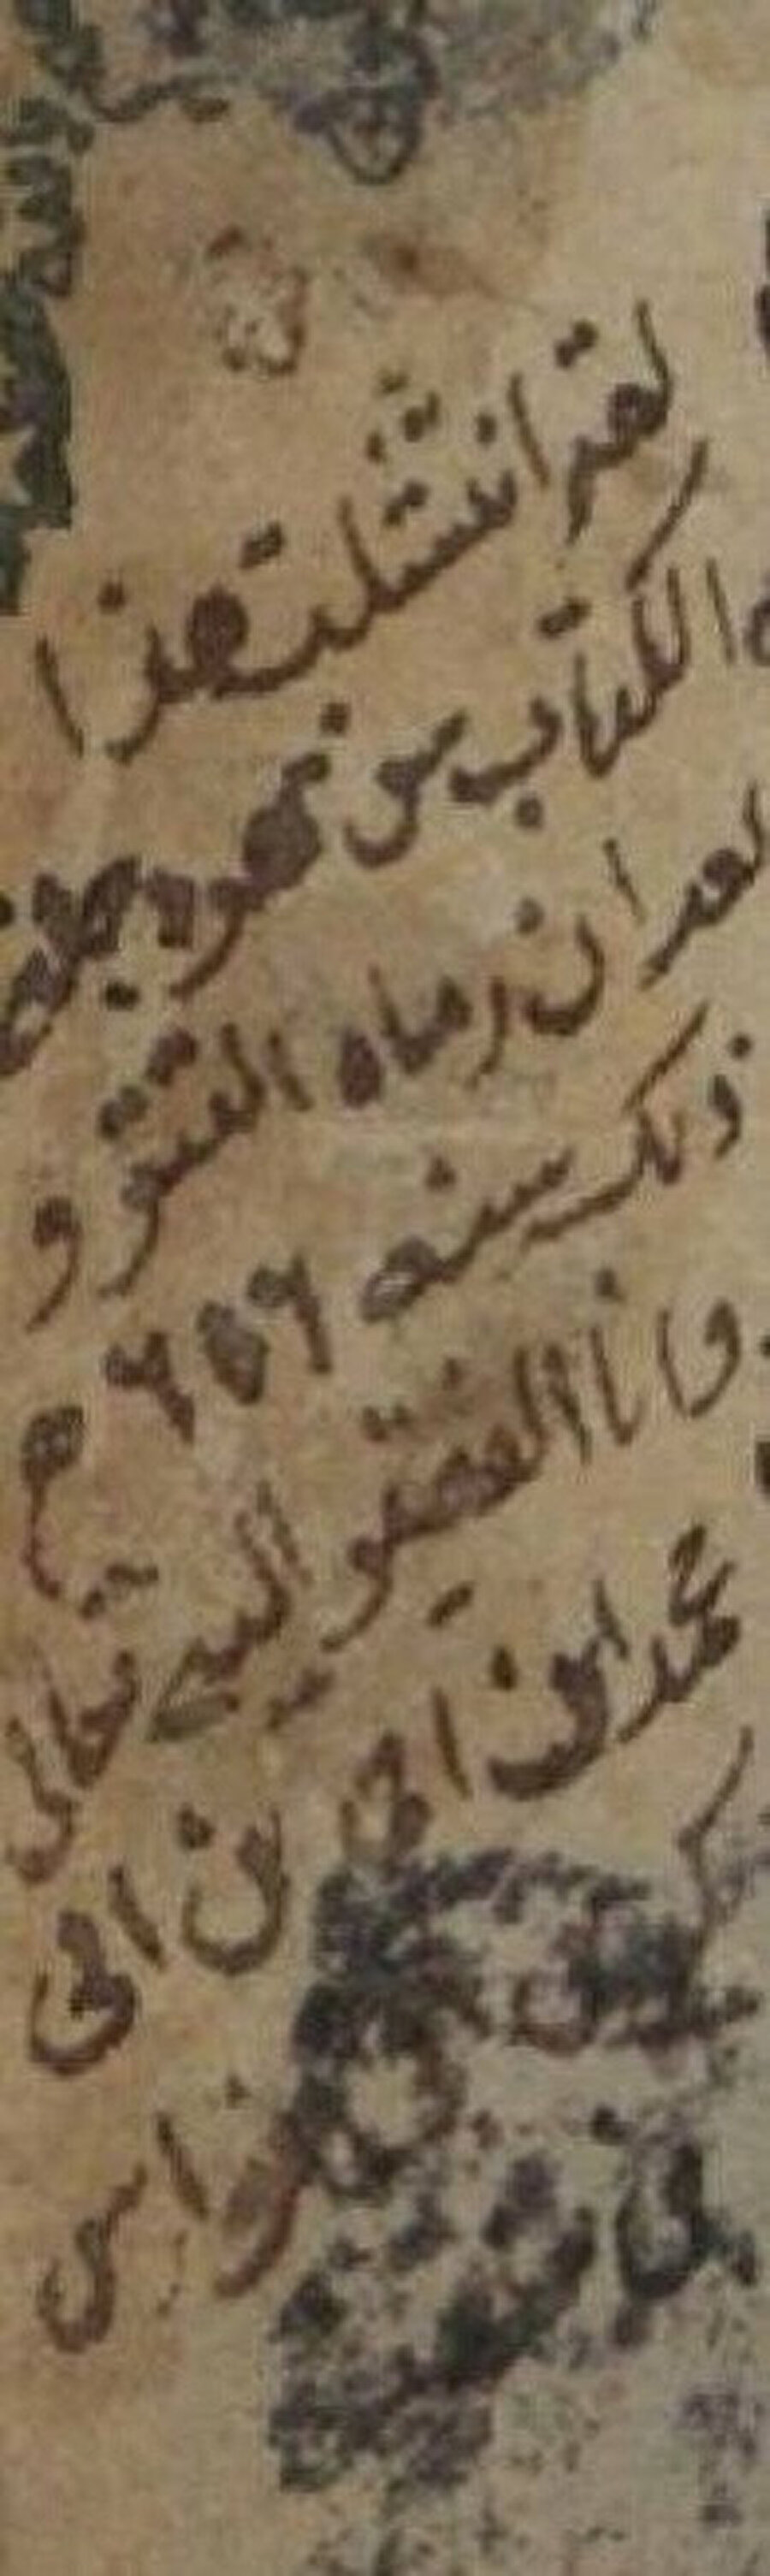 Hülâgû’nun Bağdat’ı işgali esnasında atıldığı Dicle Nehri’nden çıkartılan İsfahânî’nin Müfredât’ına yazılmış notun bulunduğu kısım.